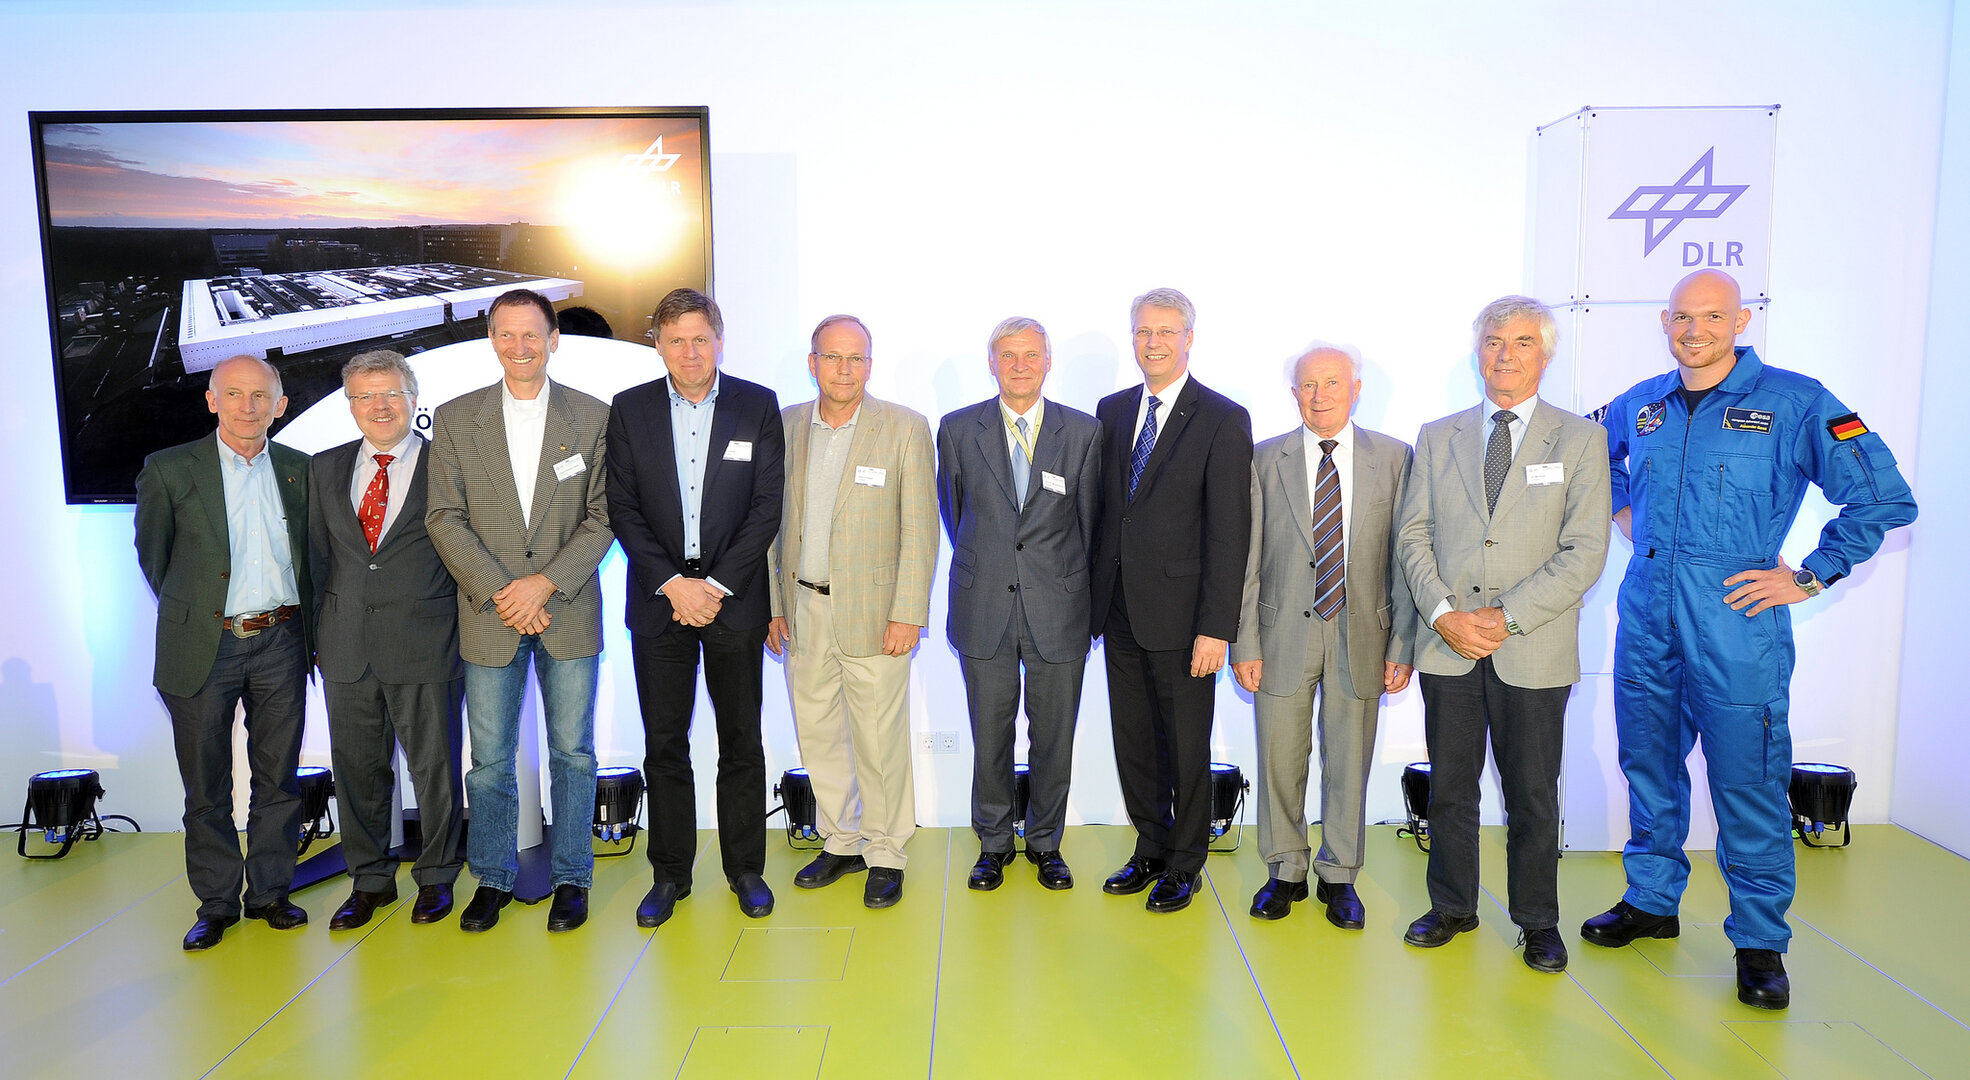 Von links: G. Thiele, R. Ewald, K.-D.Flade, U.Walter, H. Schlegel, E. Messerschmid, T. Reiter, S. Jähn, U. Merbold, A. Gerst